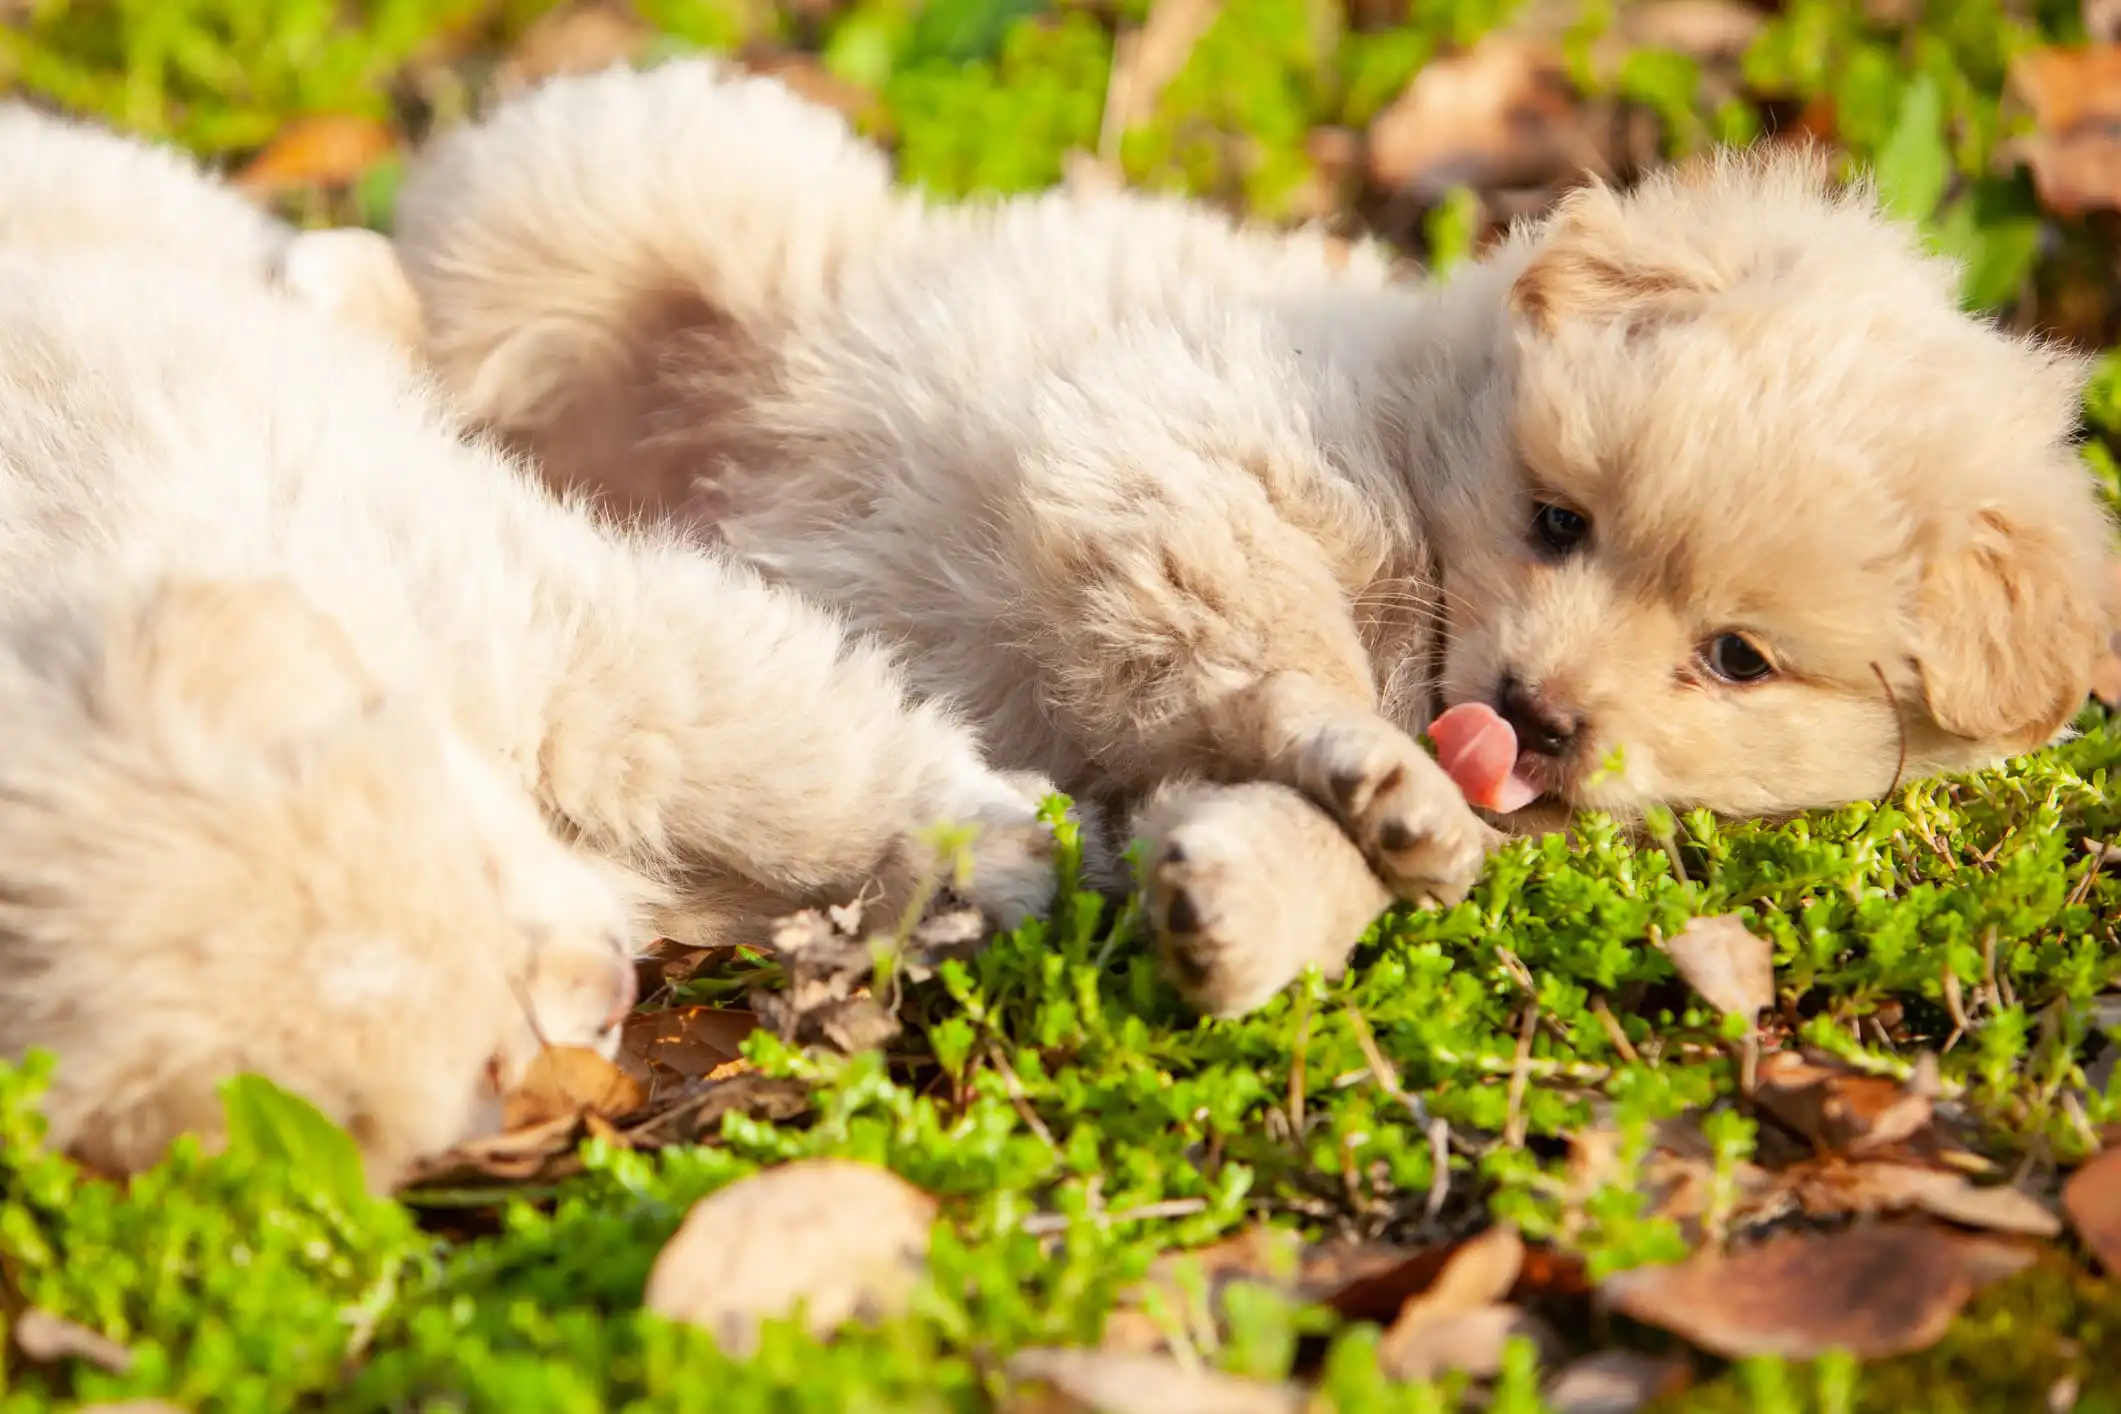 sobre uma grama com folhas dois cachorros de pelo cor bege estão deitados um deles com a língua de fora com fundo desfocado.